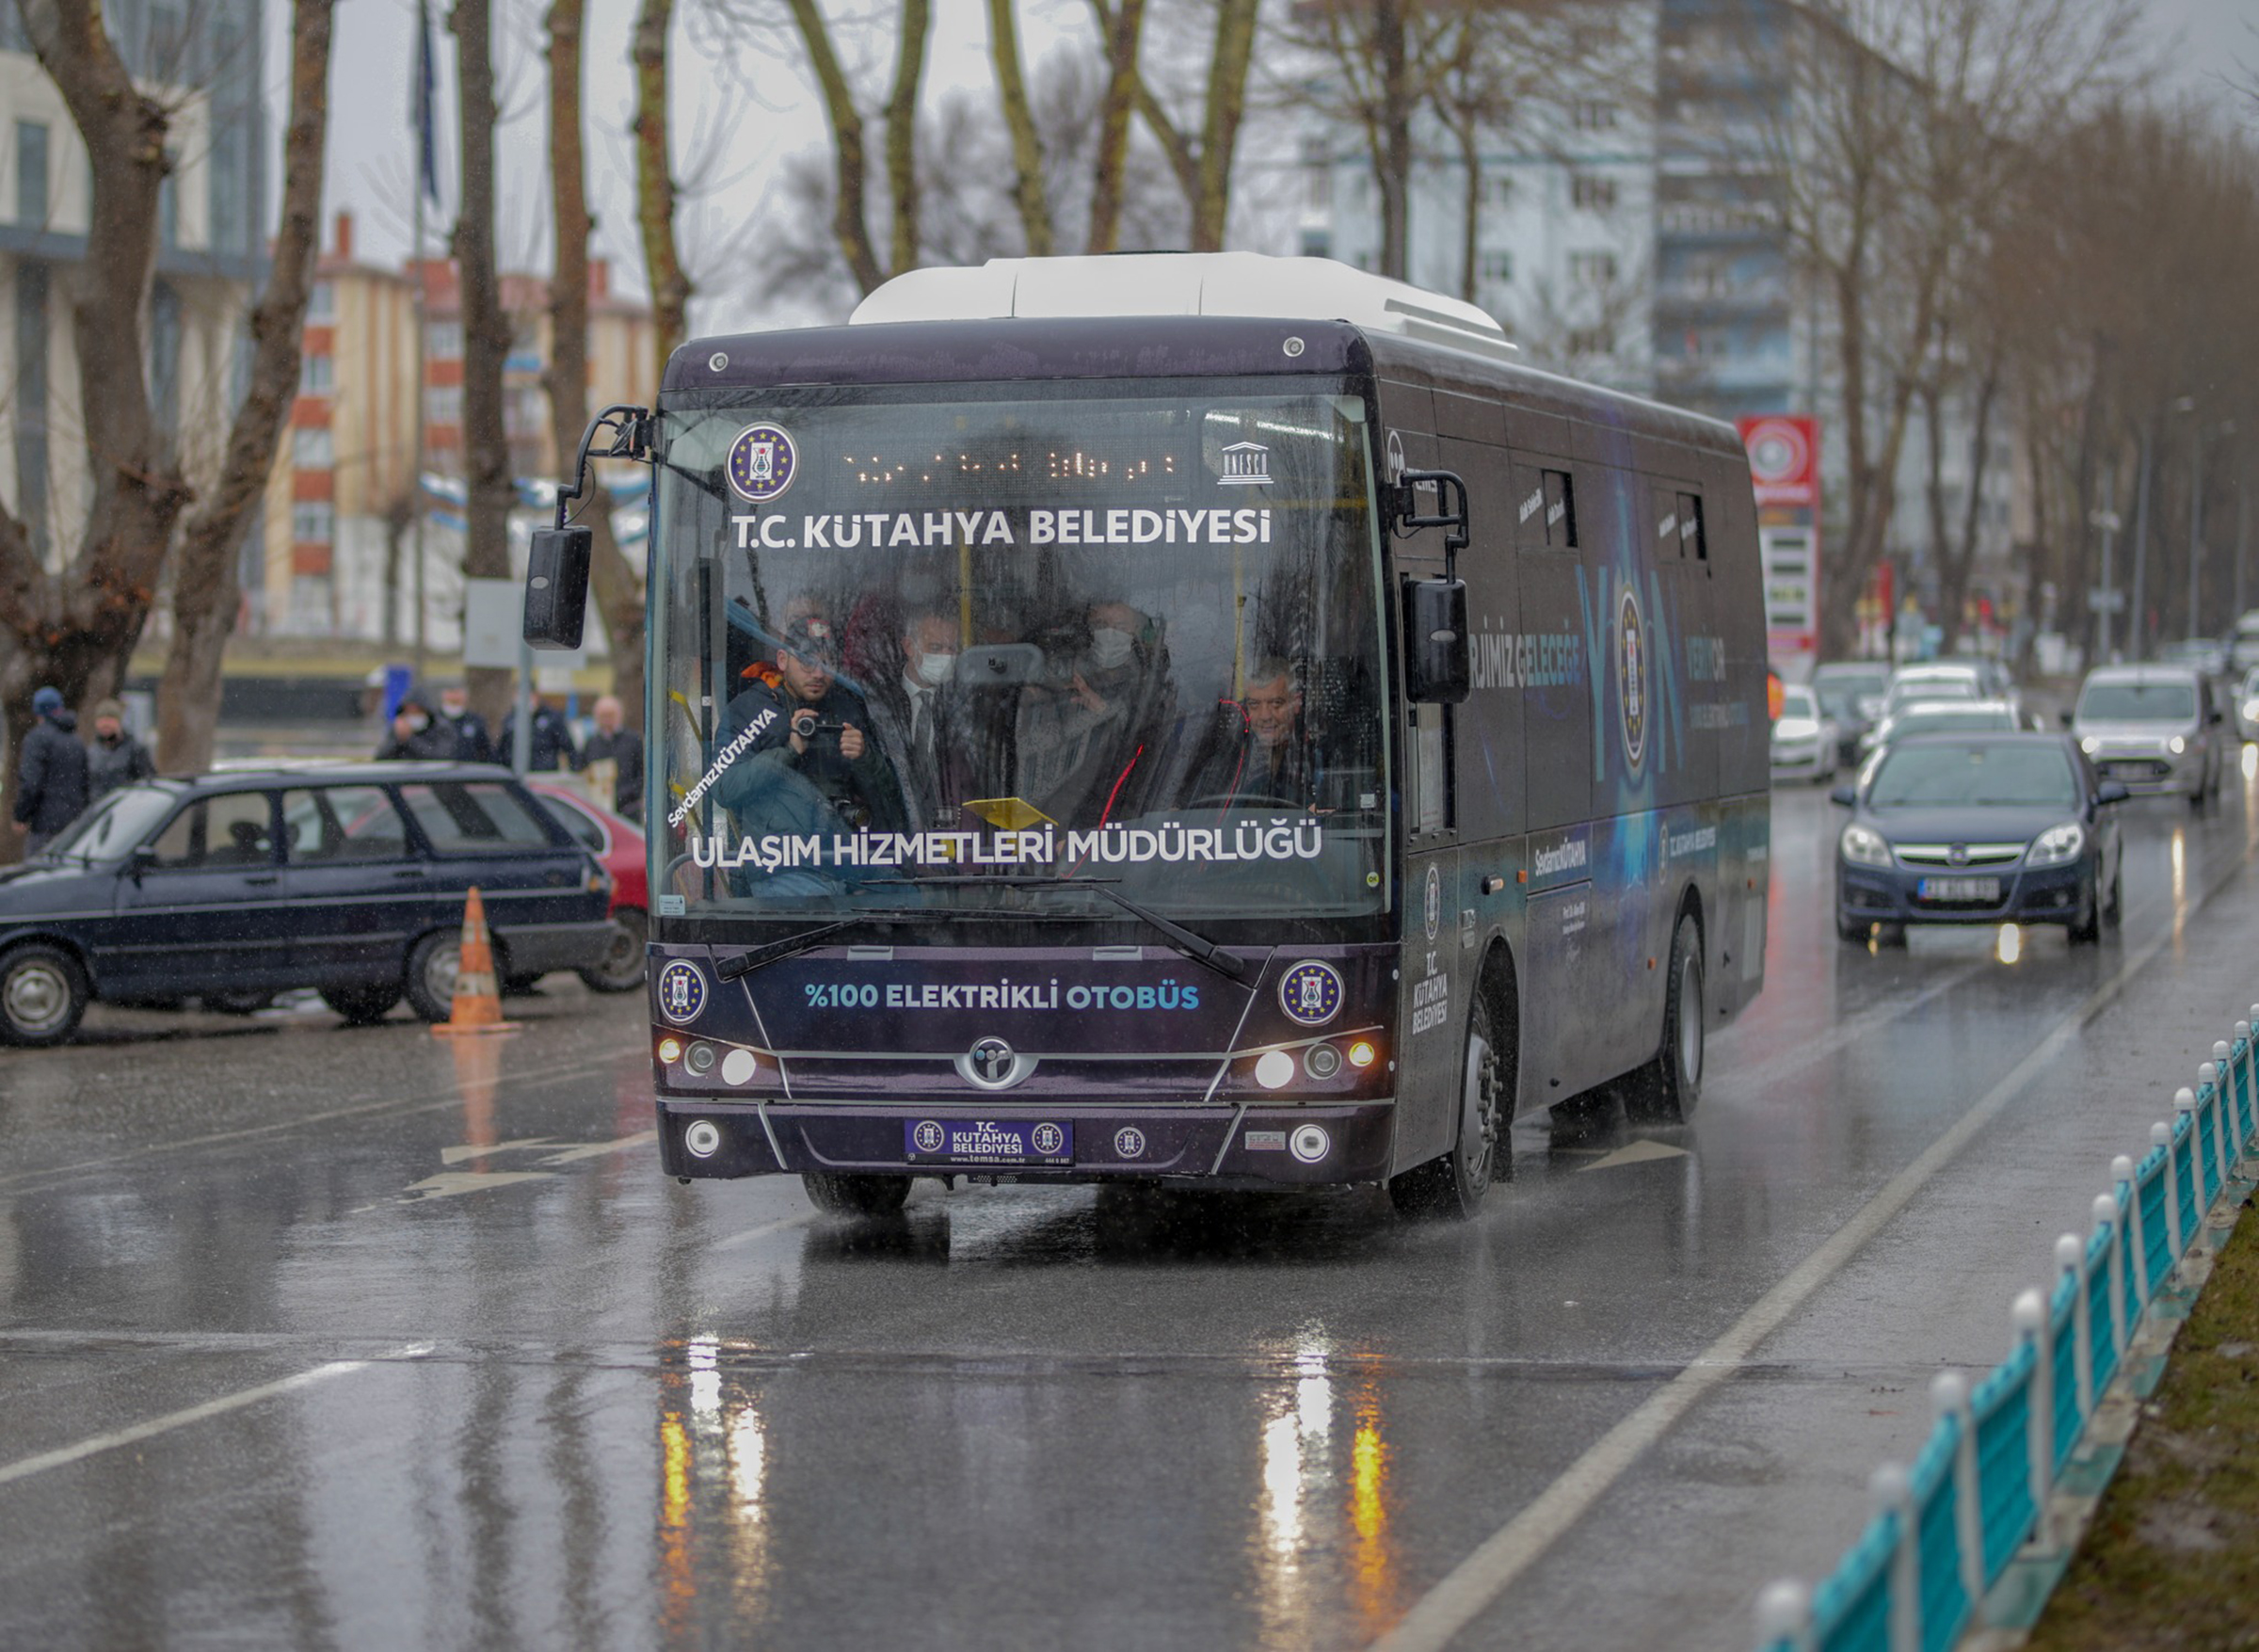 Yüzde 100 yerli elektrikli otobüs Kütahya’da tanıtıldı